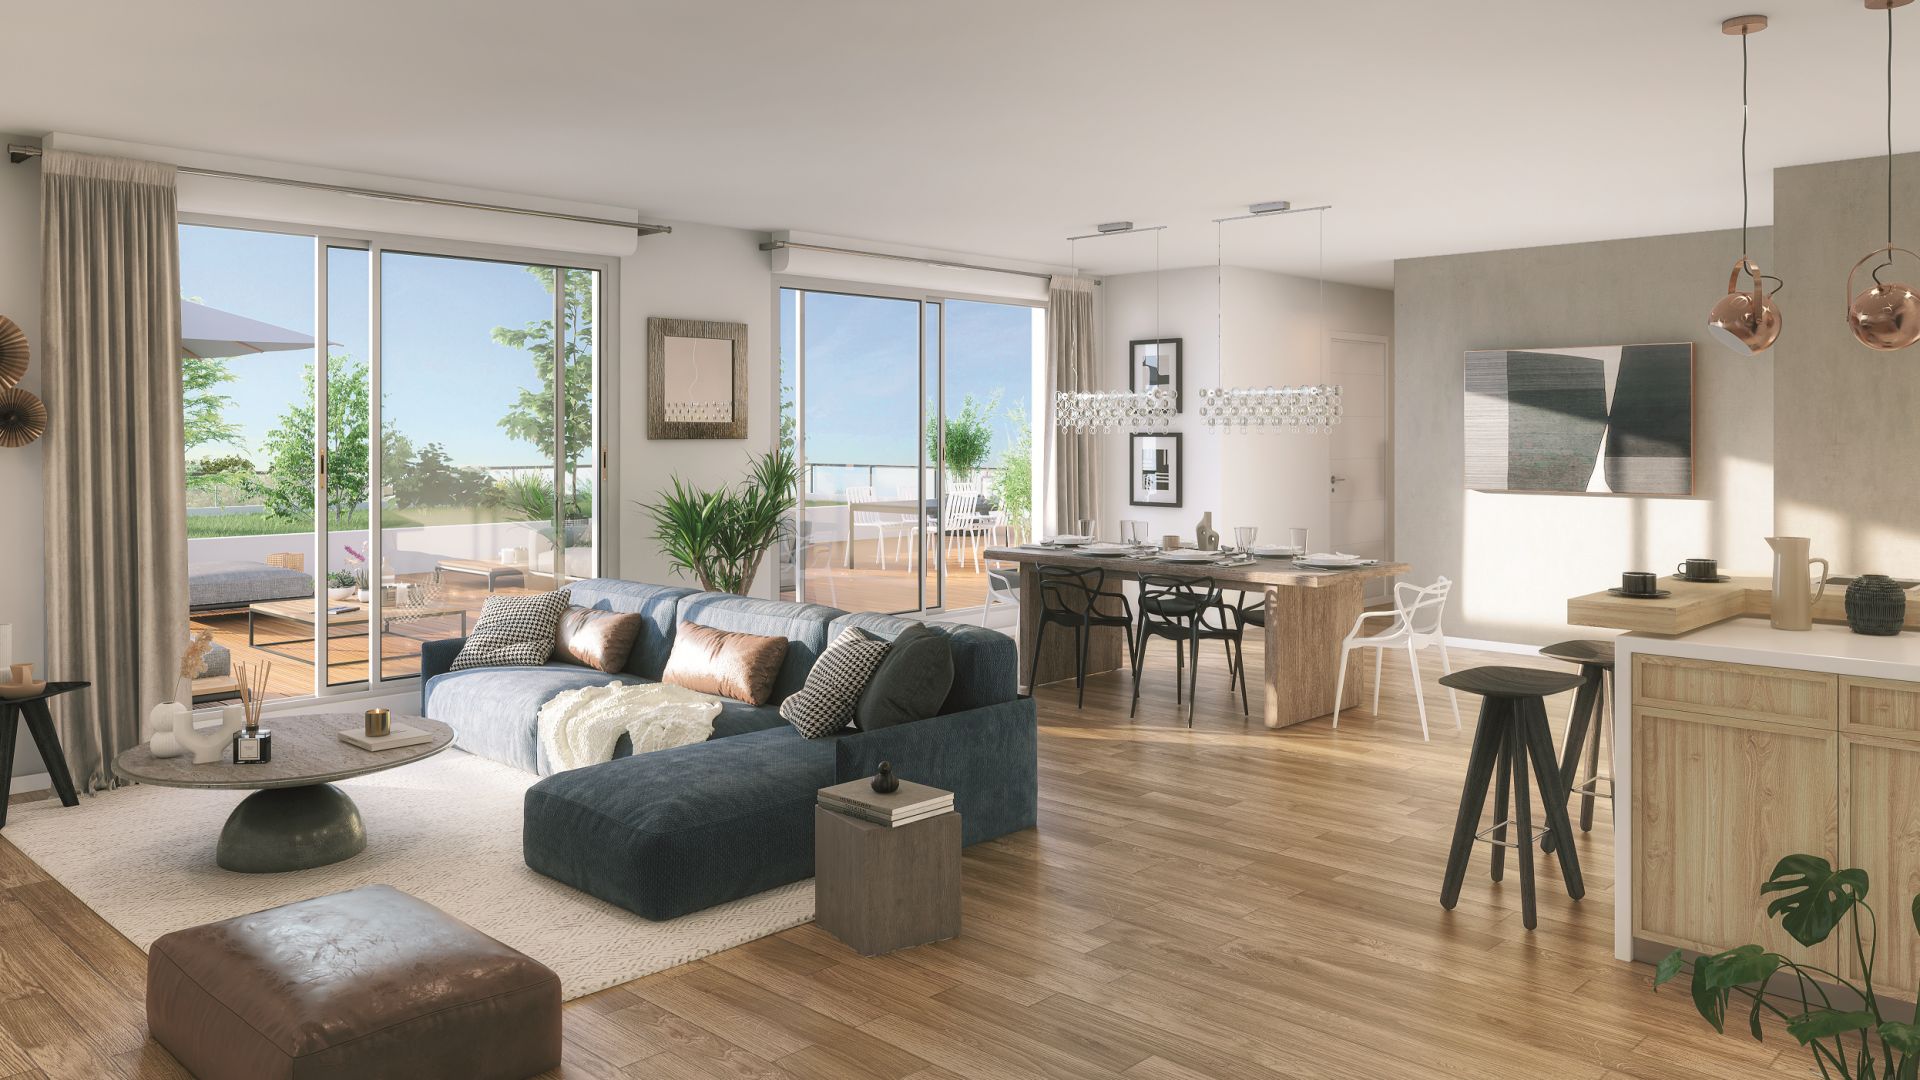 Greencity Immobilier - Grand Horizon - achat appartements du T2 au T4 duplex - Toulouse - Pech David 31400 - vue intérieure